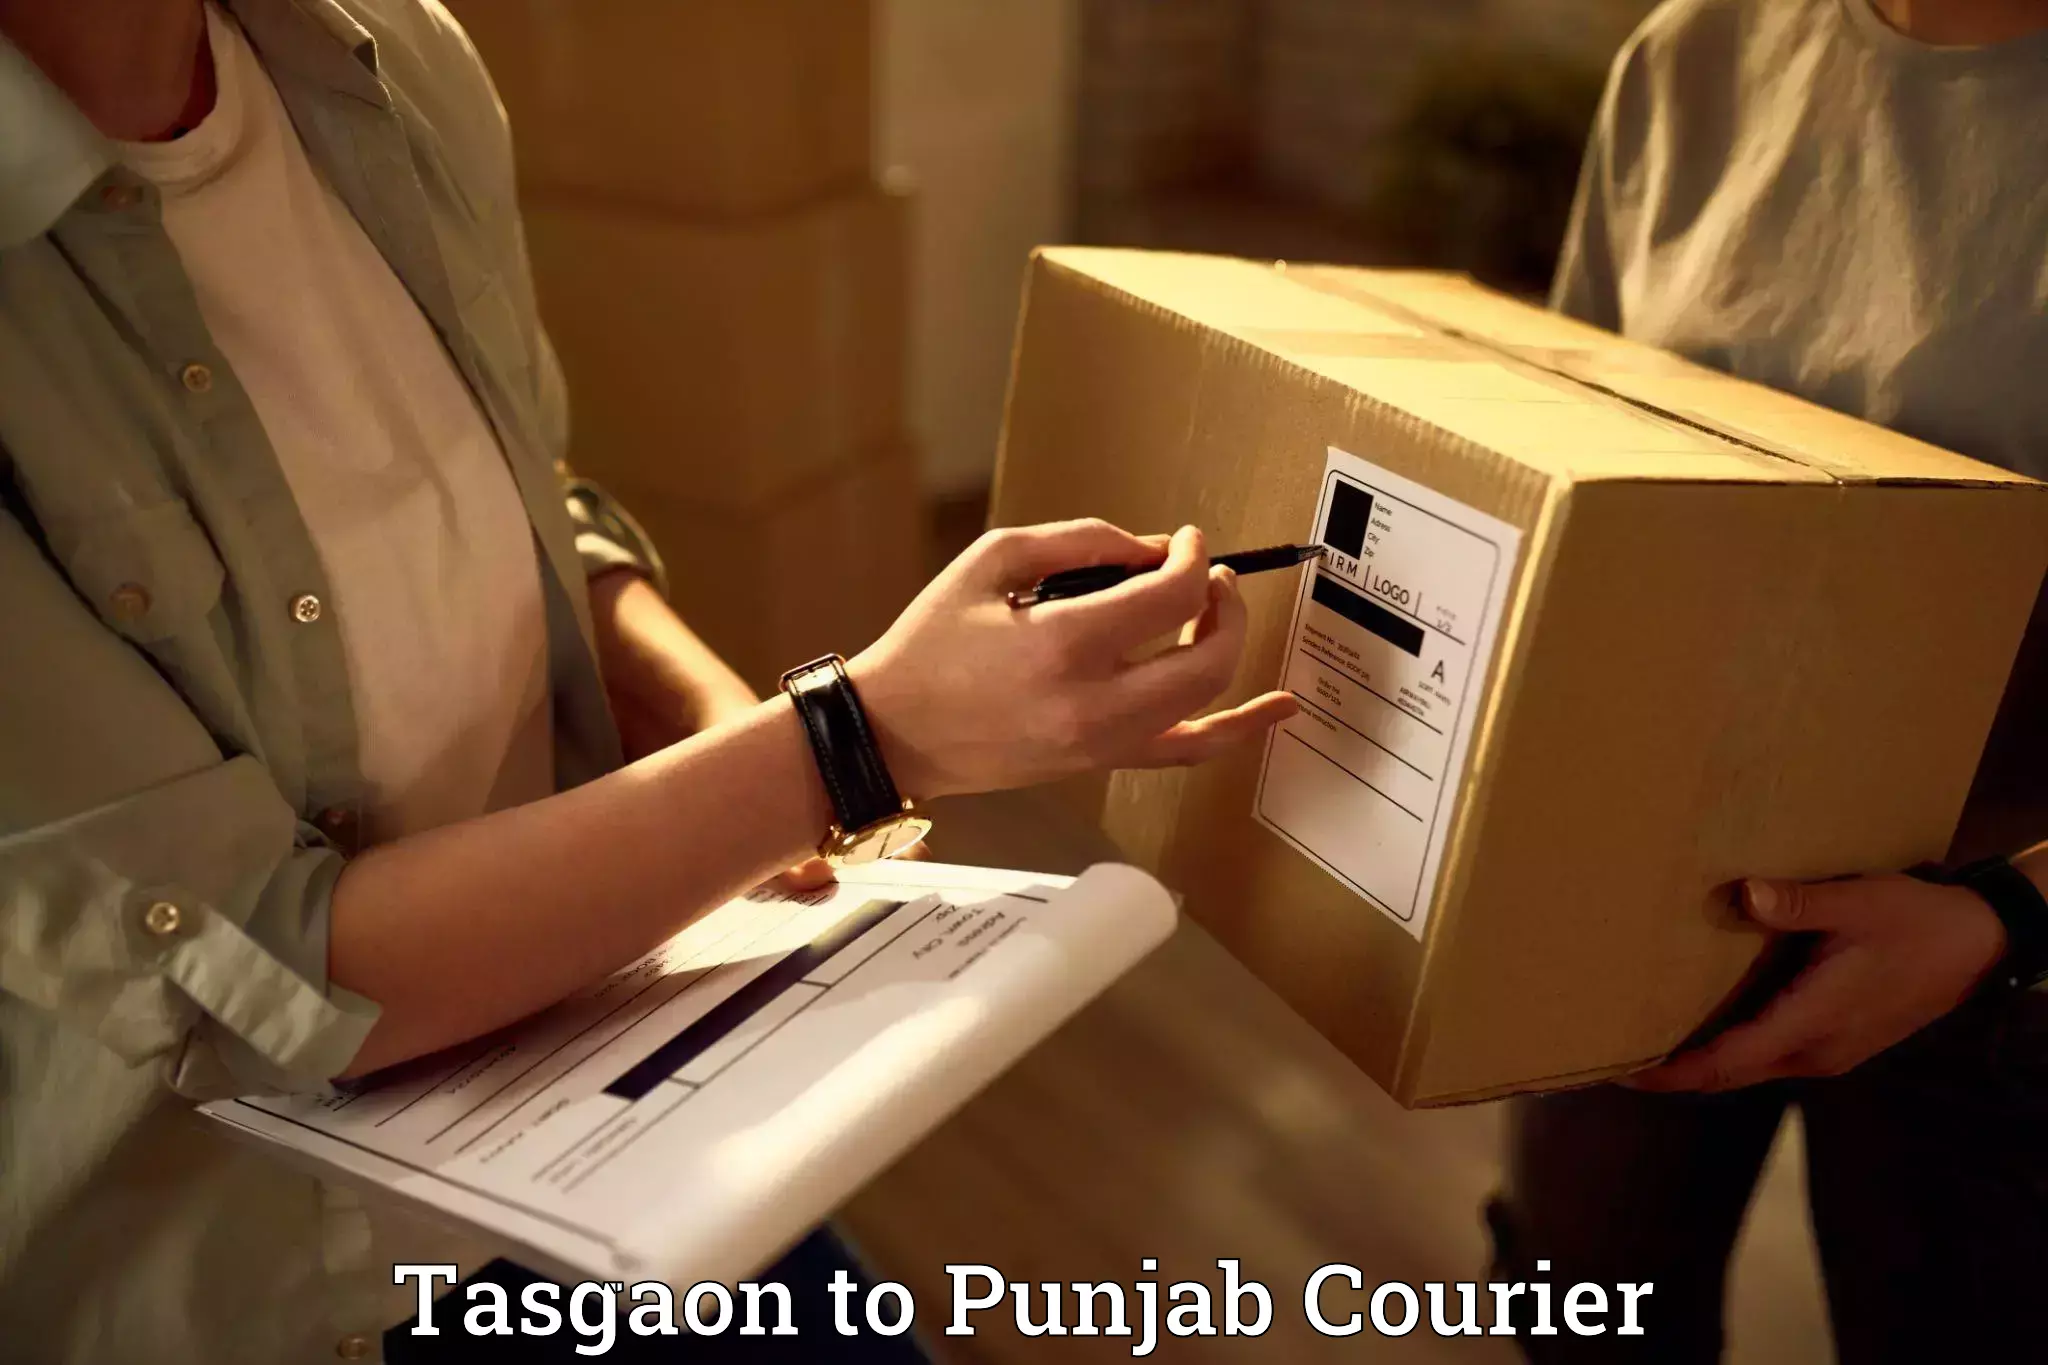 Furniture delivery service in Tasgaon to Faridkot